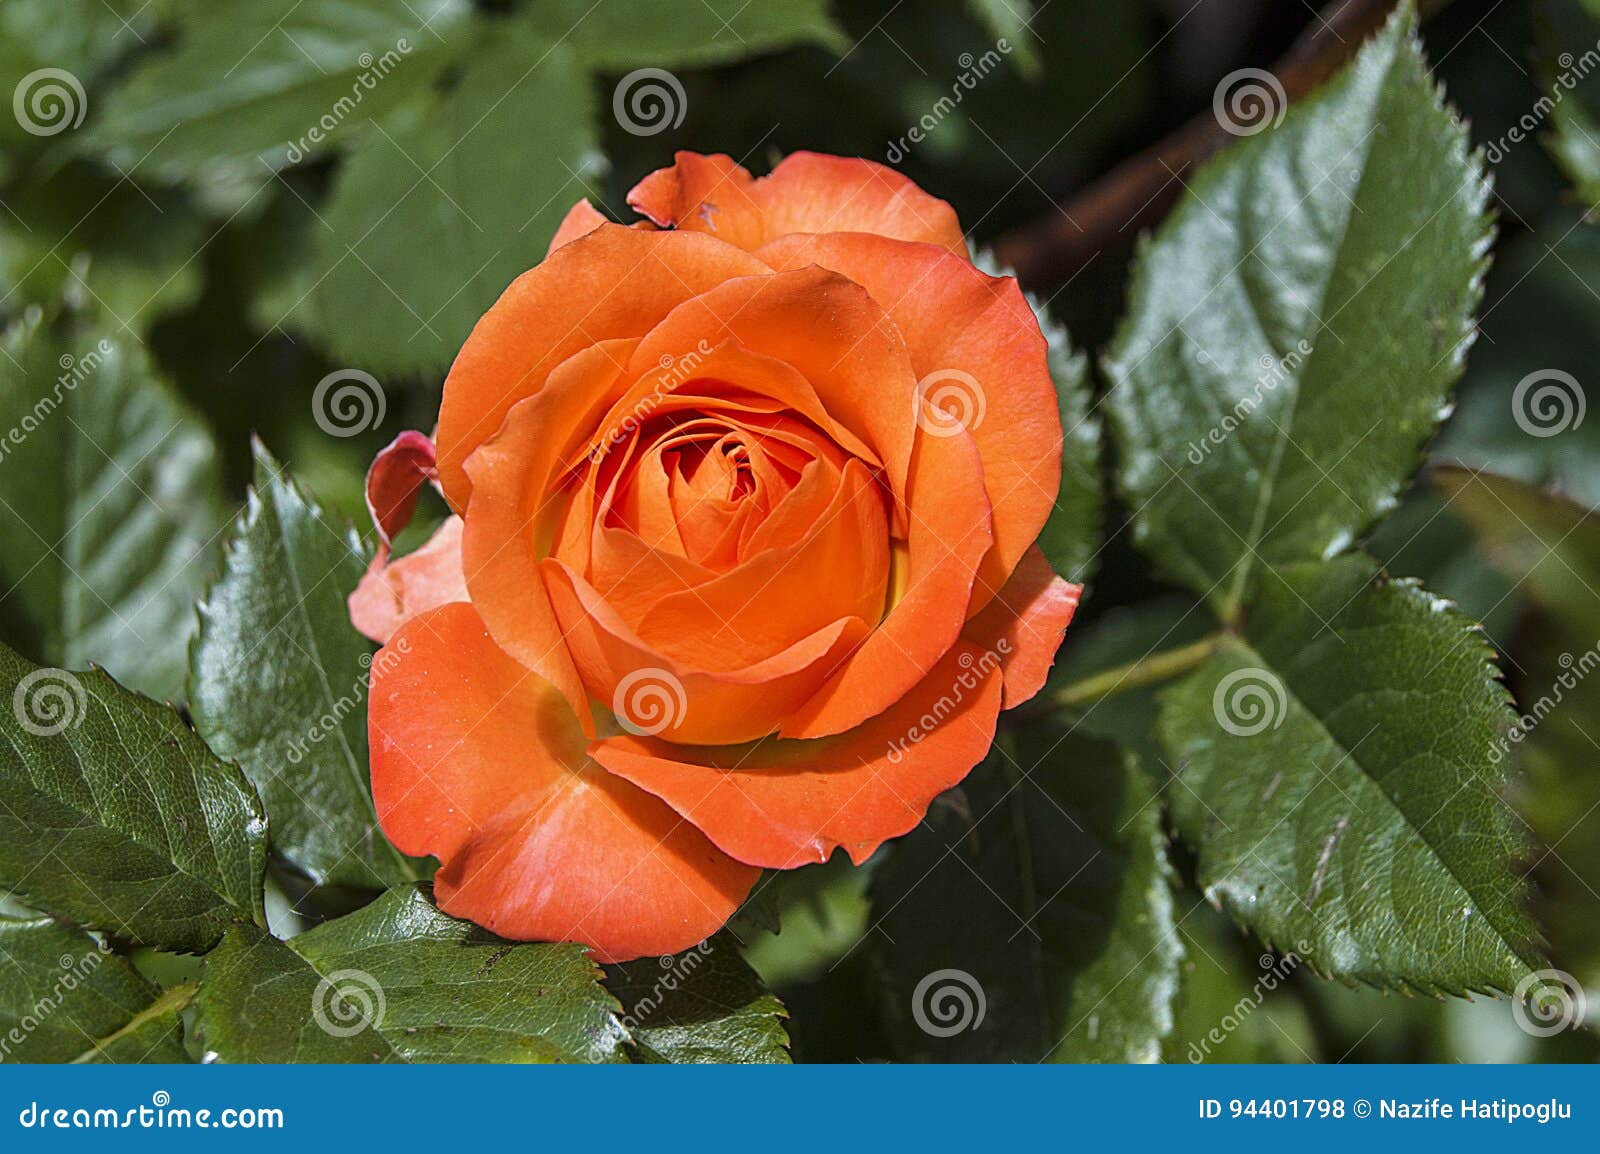 Imagens De Rosa, Rosas Coloridas, Rosas Alaranjadas No Jardim Foto de Stock  - Imagem de mercado, comprado: 94401798